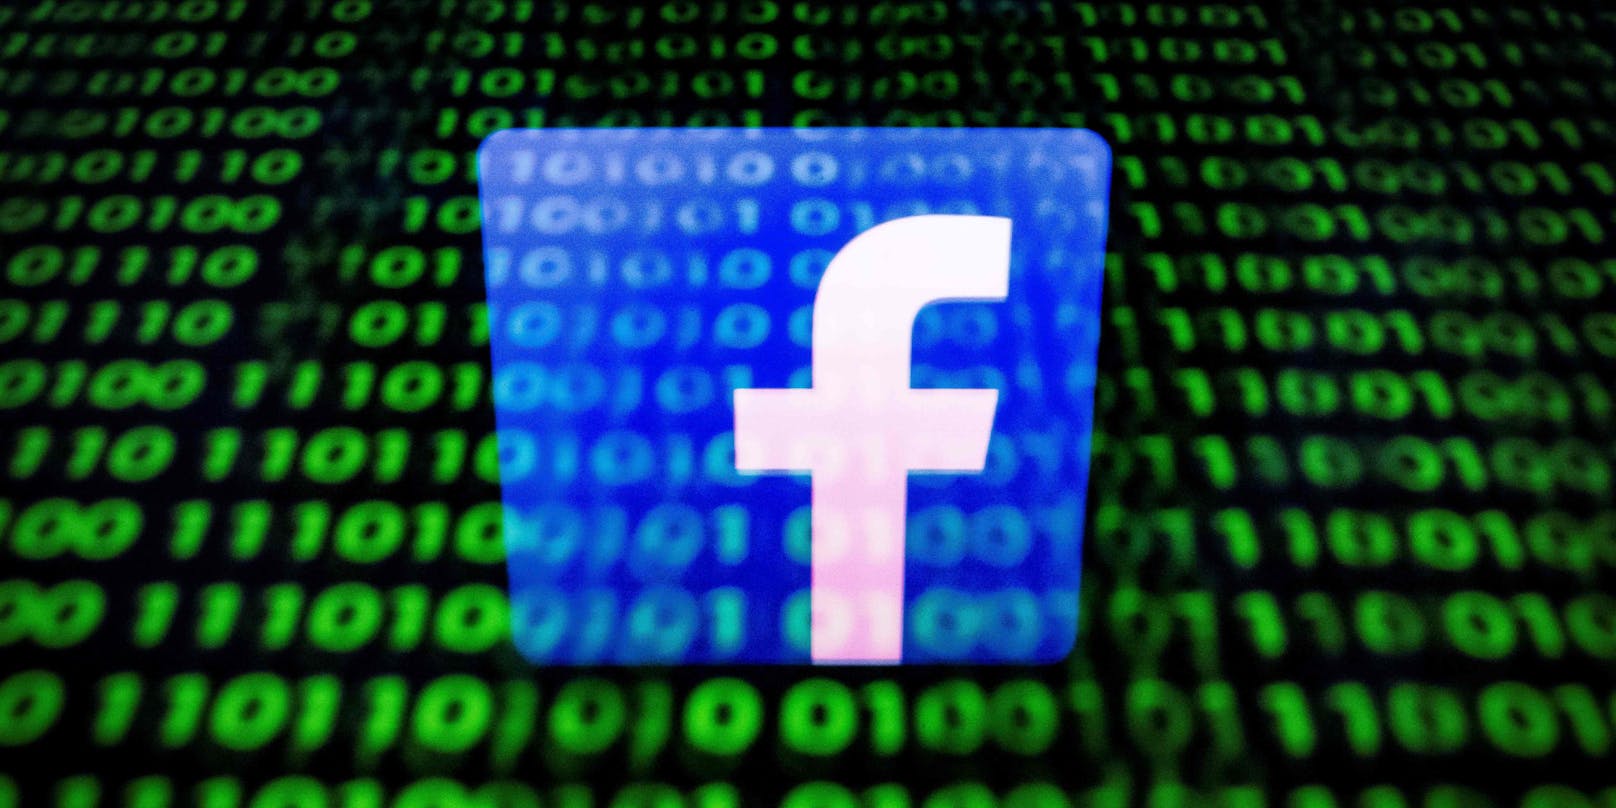 Weil der Social Media-Gigant Facebook biometrische Daten seiner Kunden sammelte, ohne diese vorher um Erlaubnis zu fragen, wurde er in den USA zu einer rekordhohen Geldstrafe verurteilt.